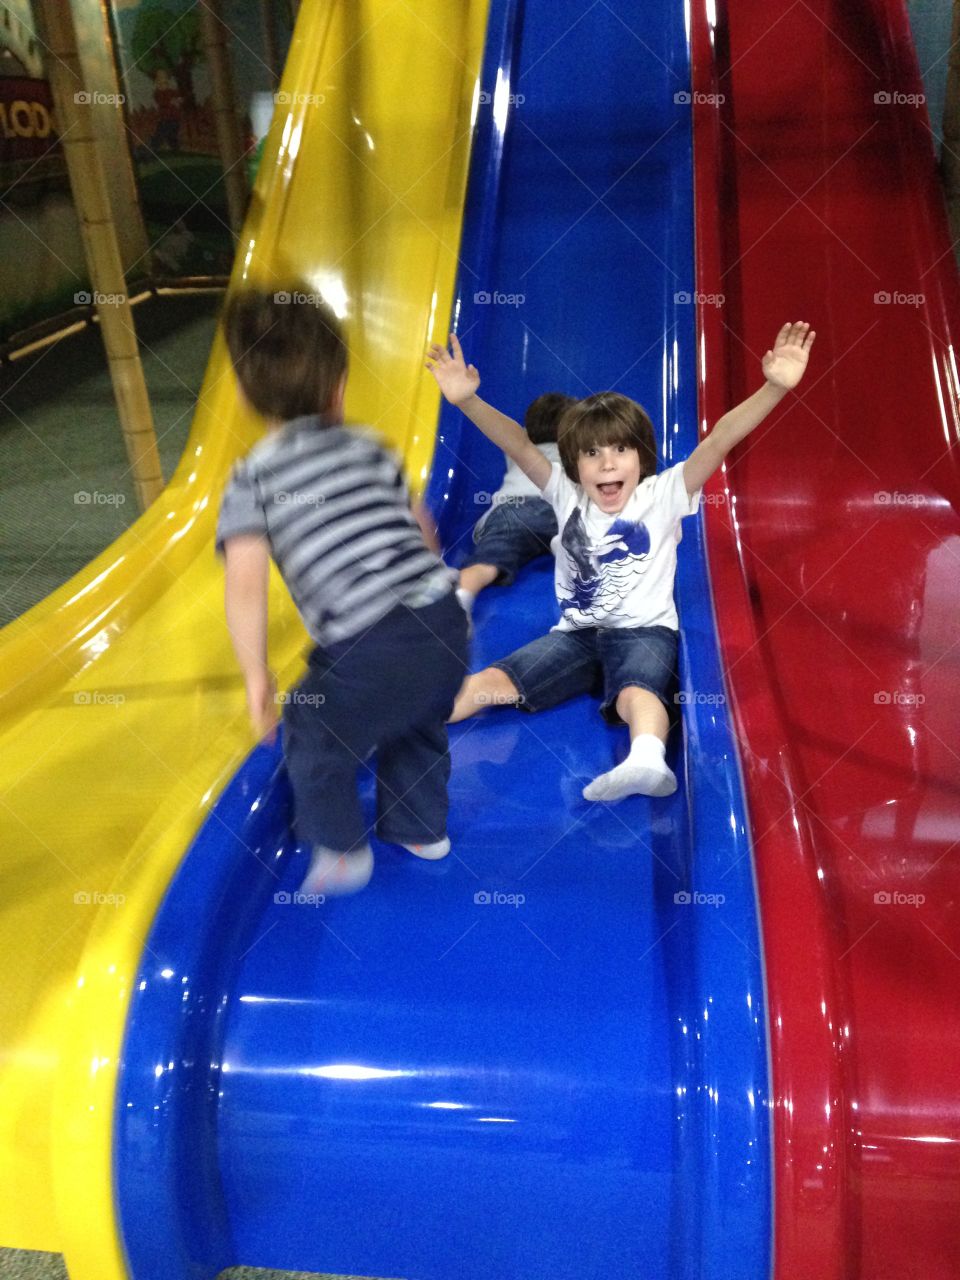 Kids having fun on a triple slide!